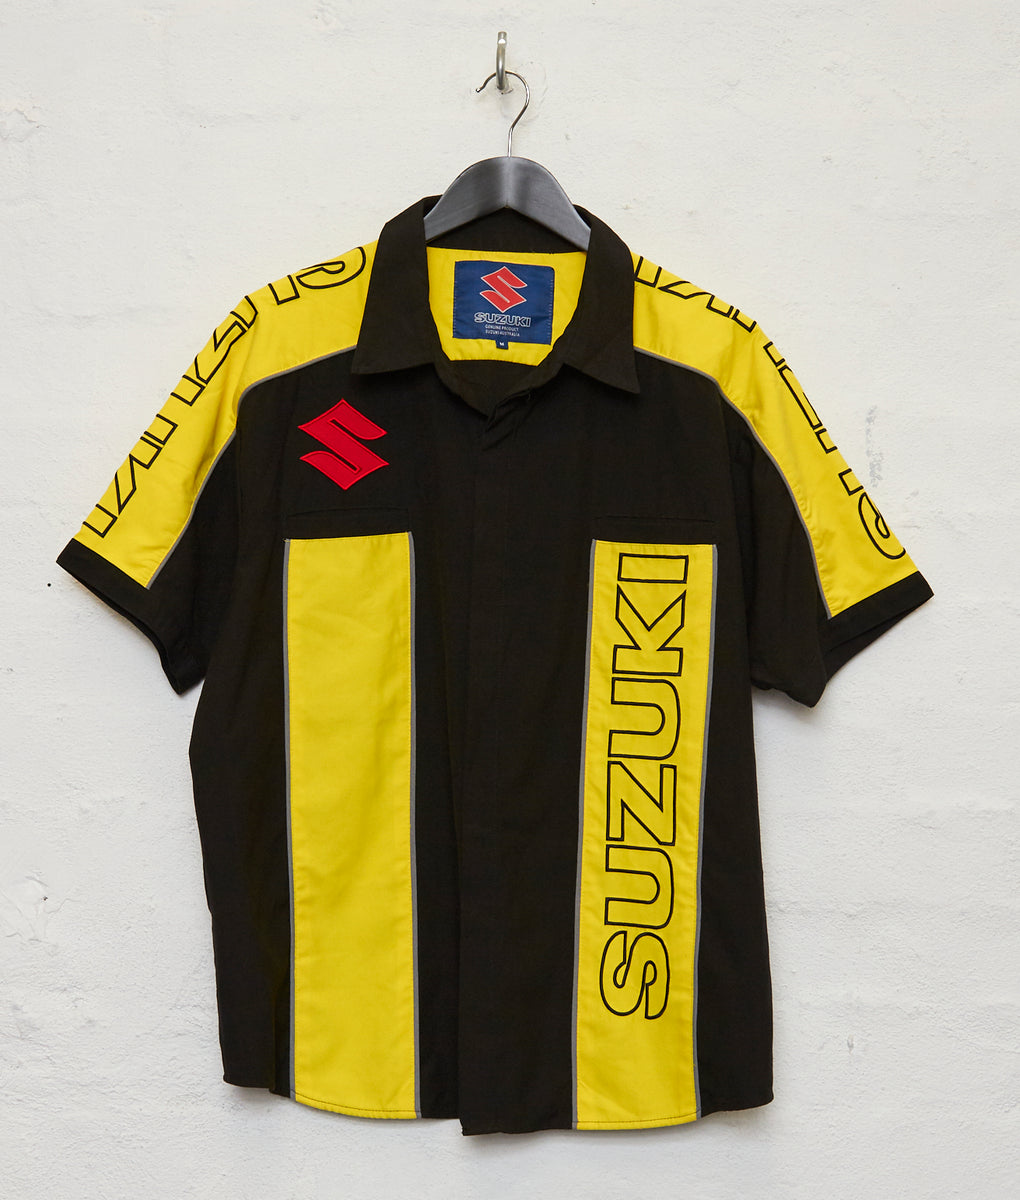 Suzuki Racing Shirt (M)